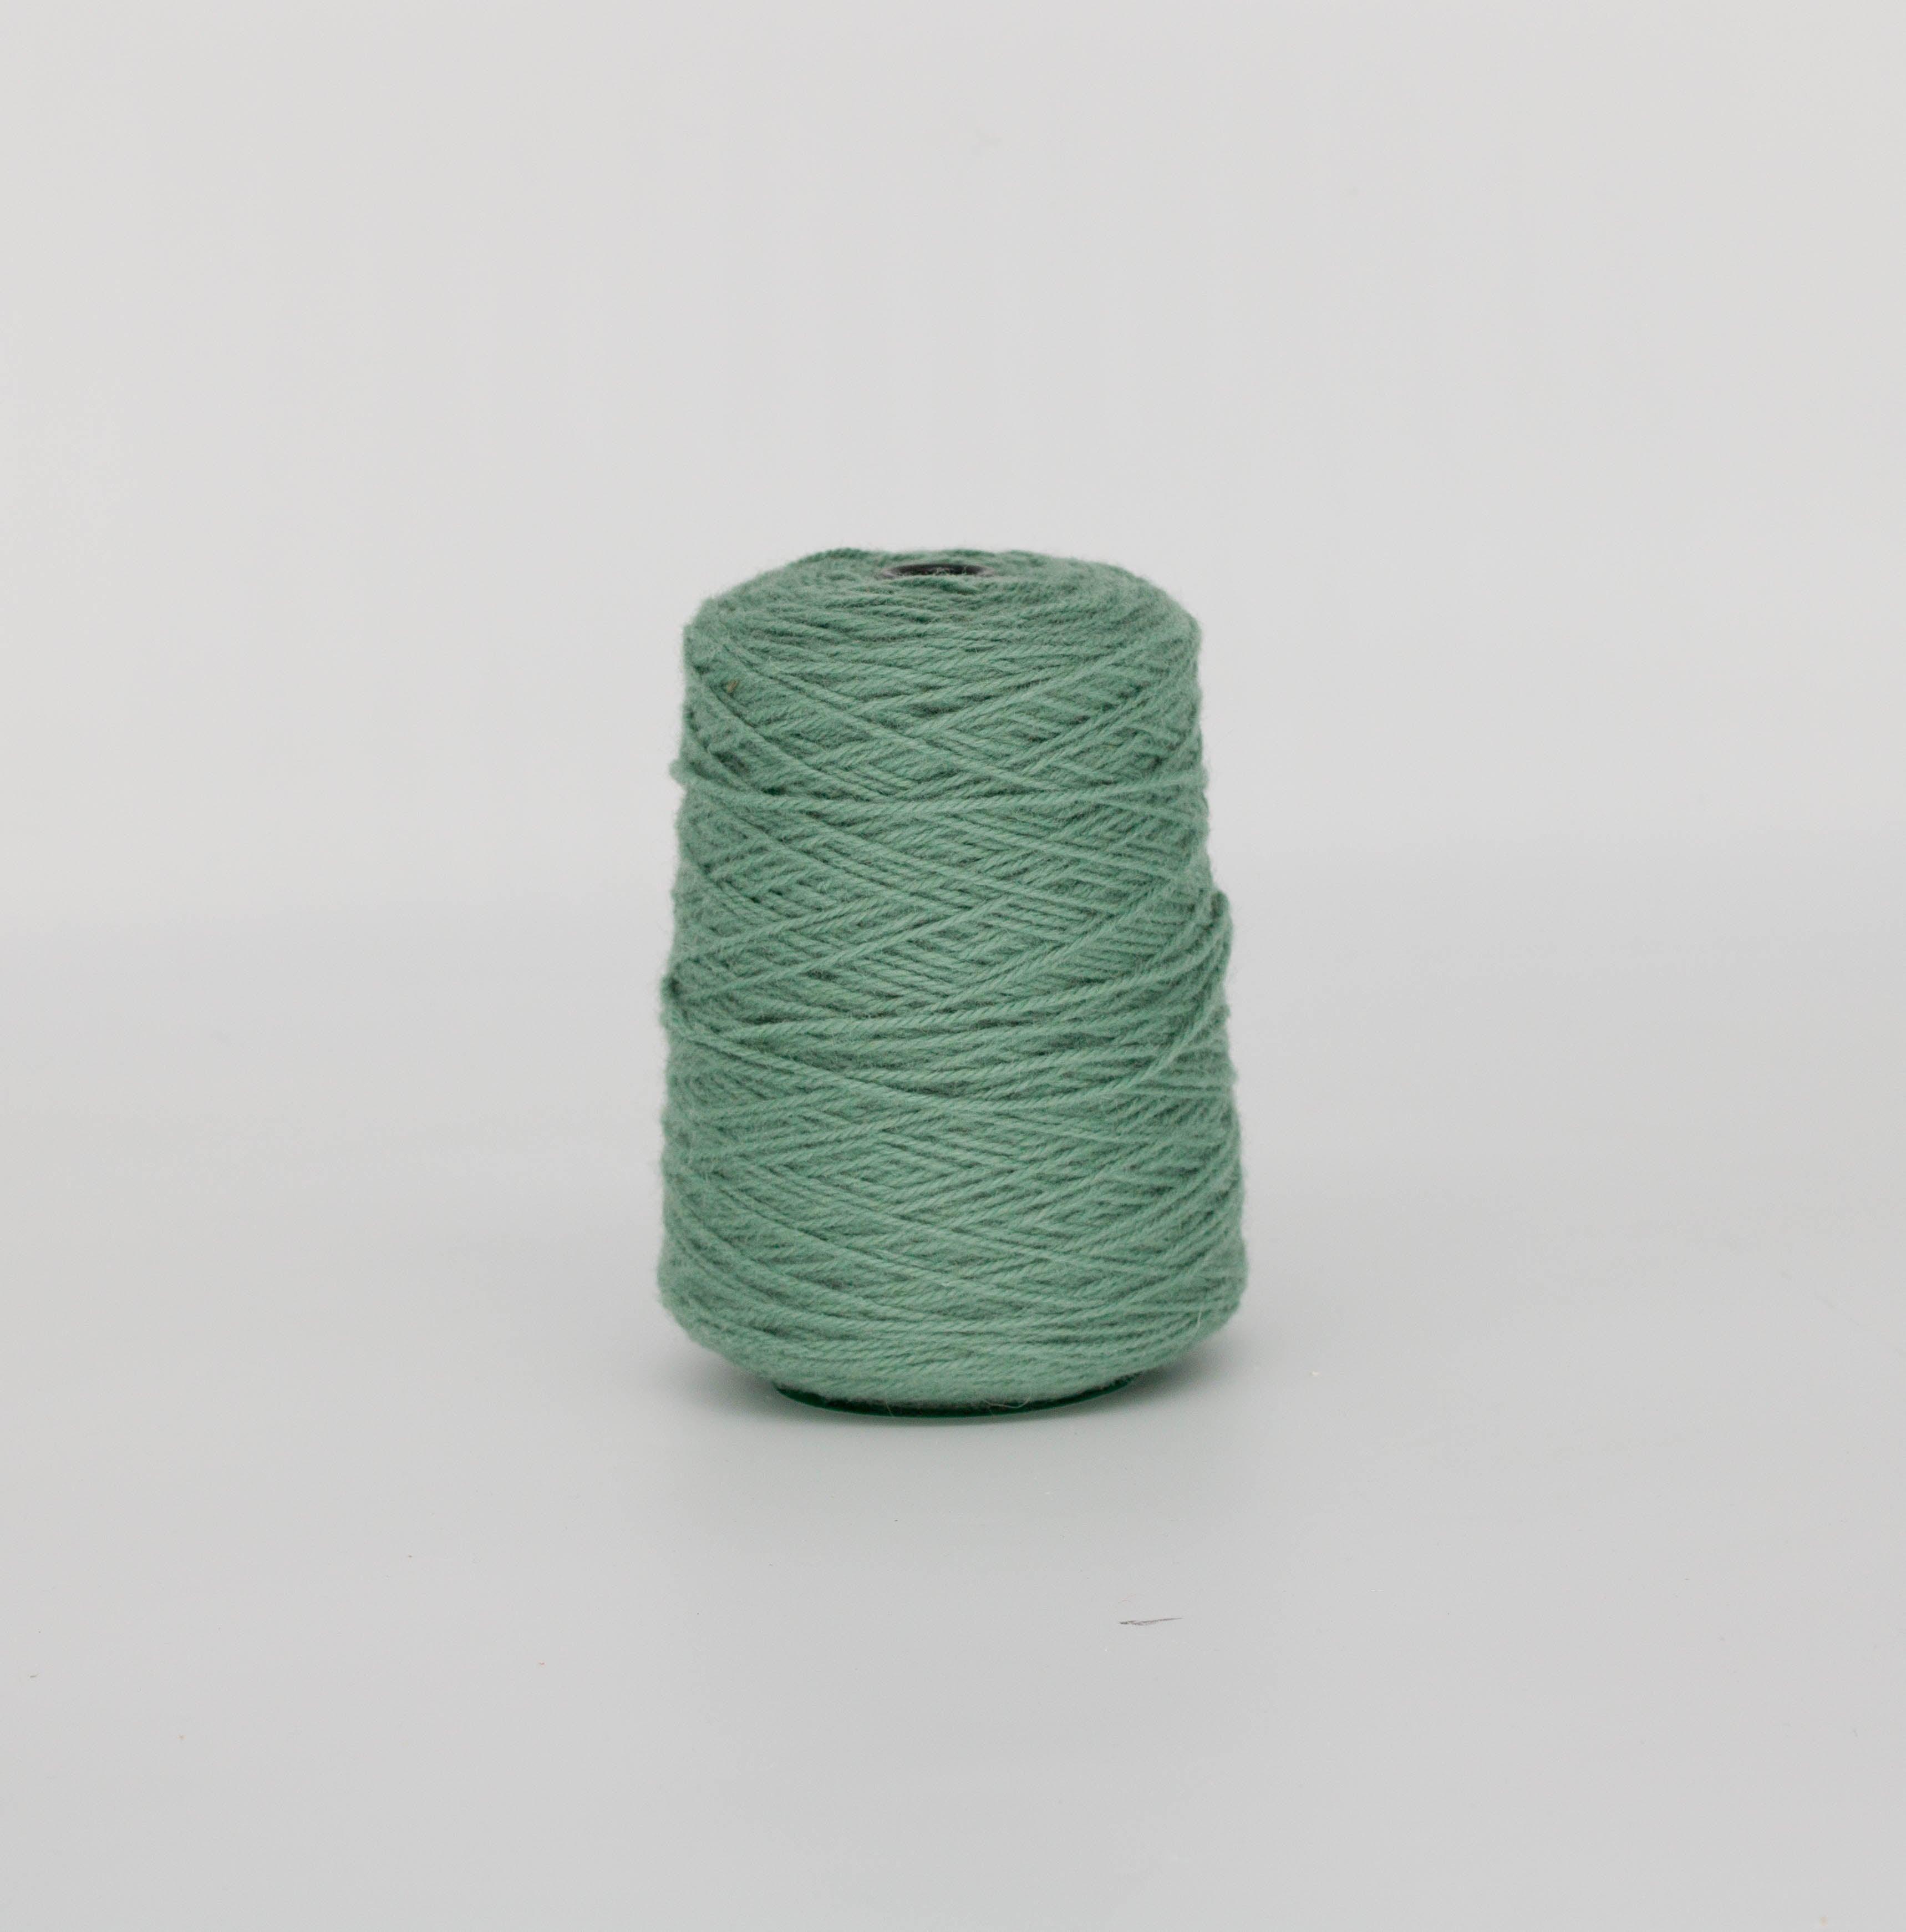 Granite green 100% Wool Rug Yarn On Cones (206) - Tuftingshop